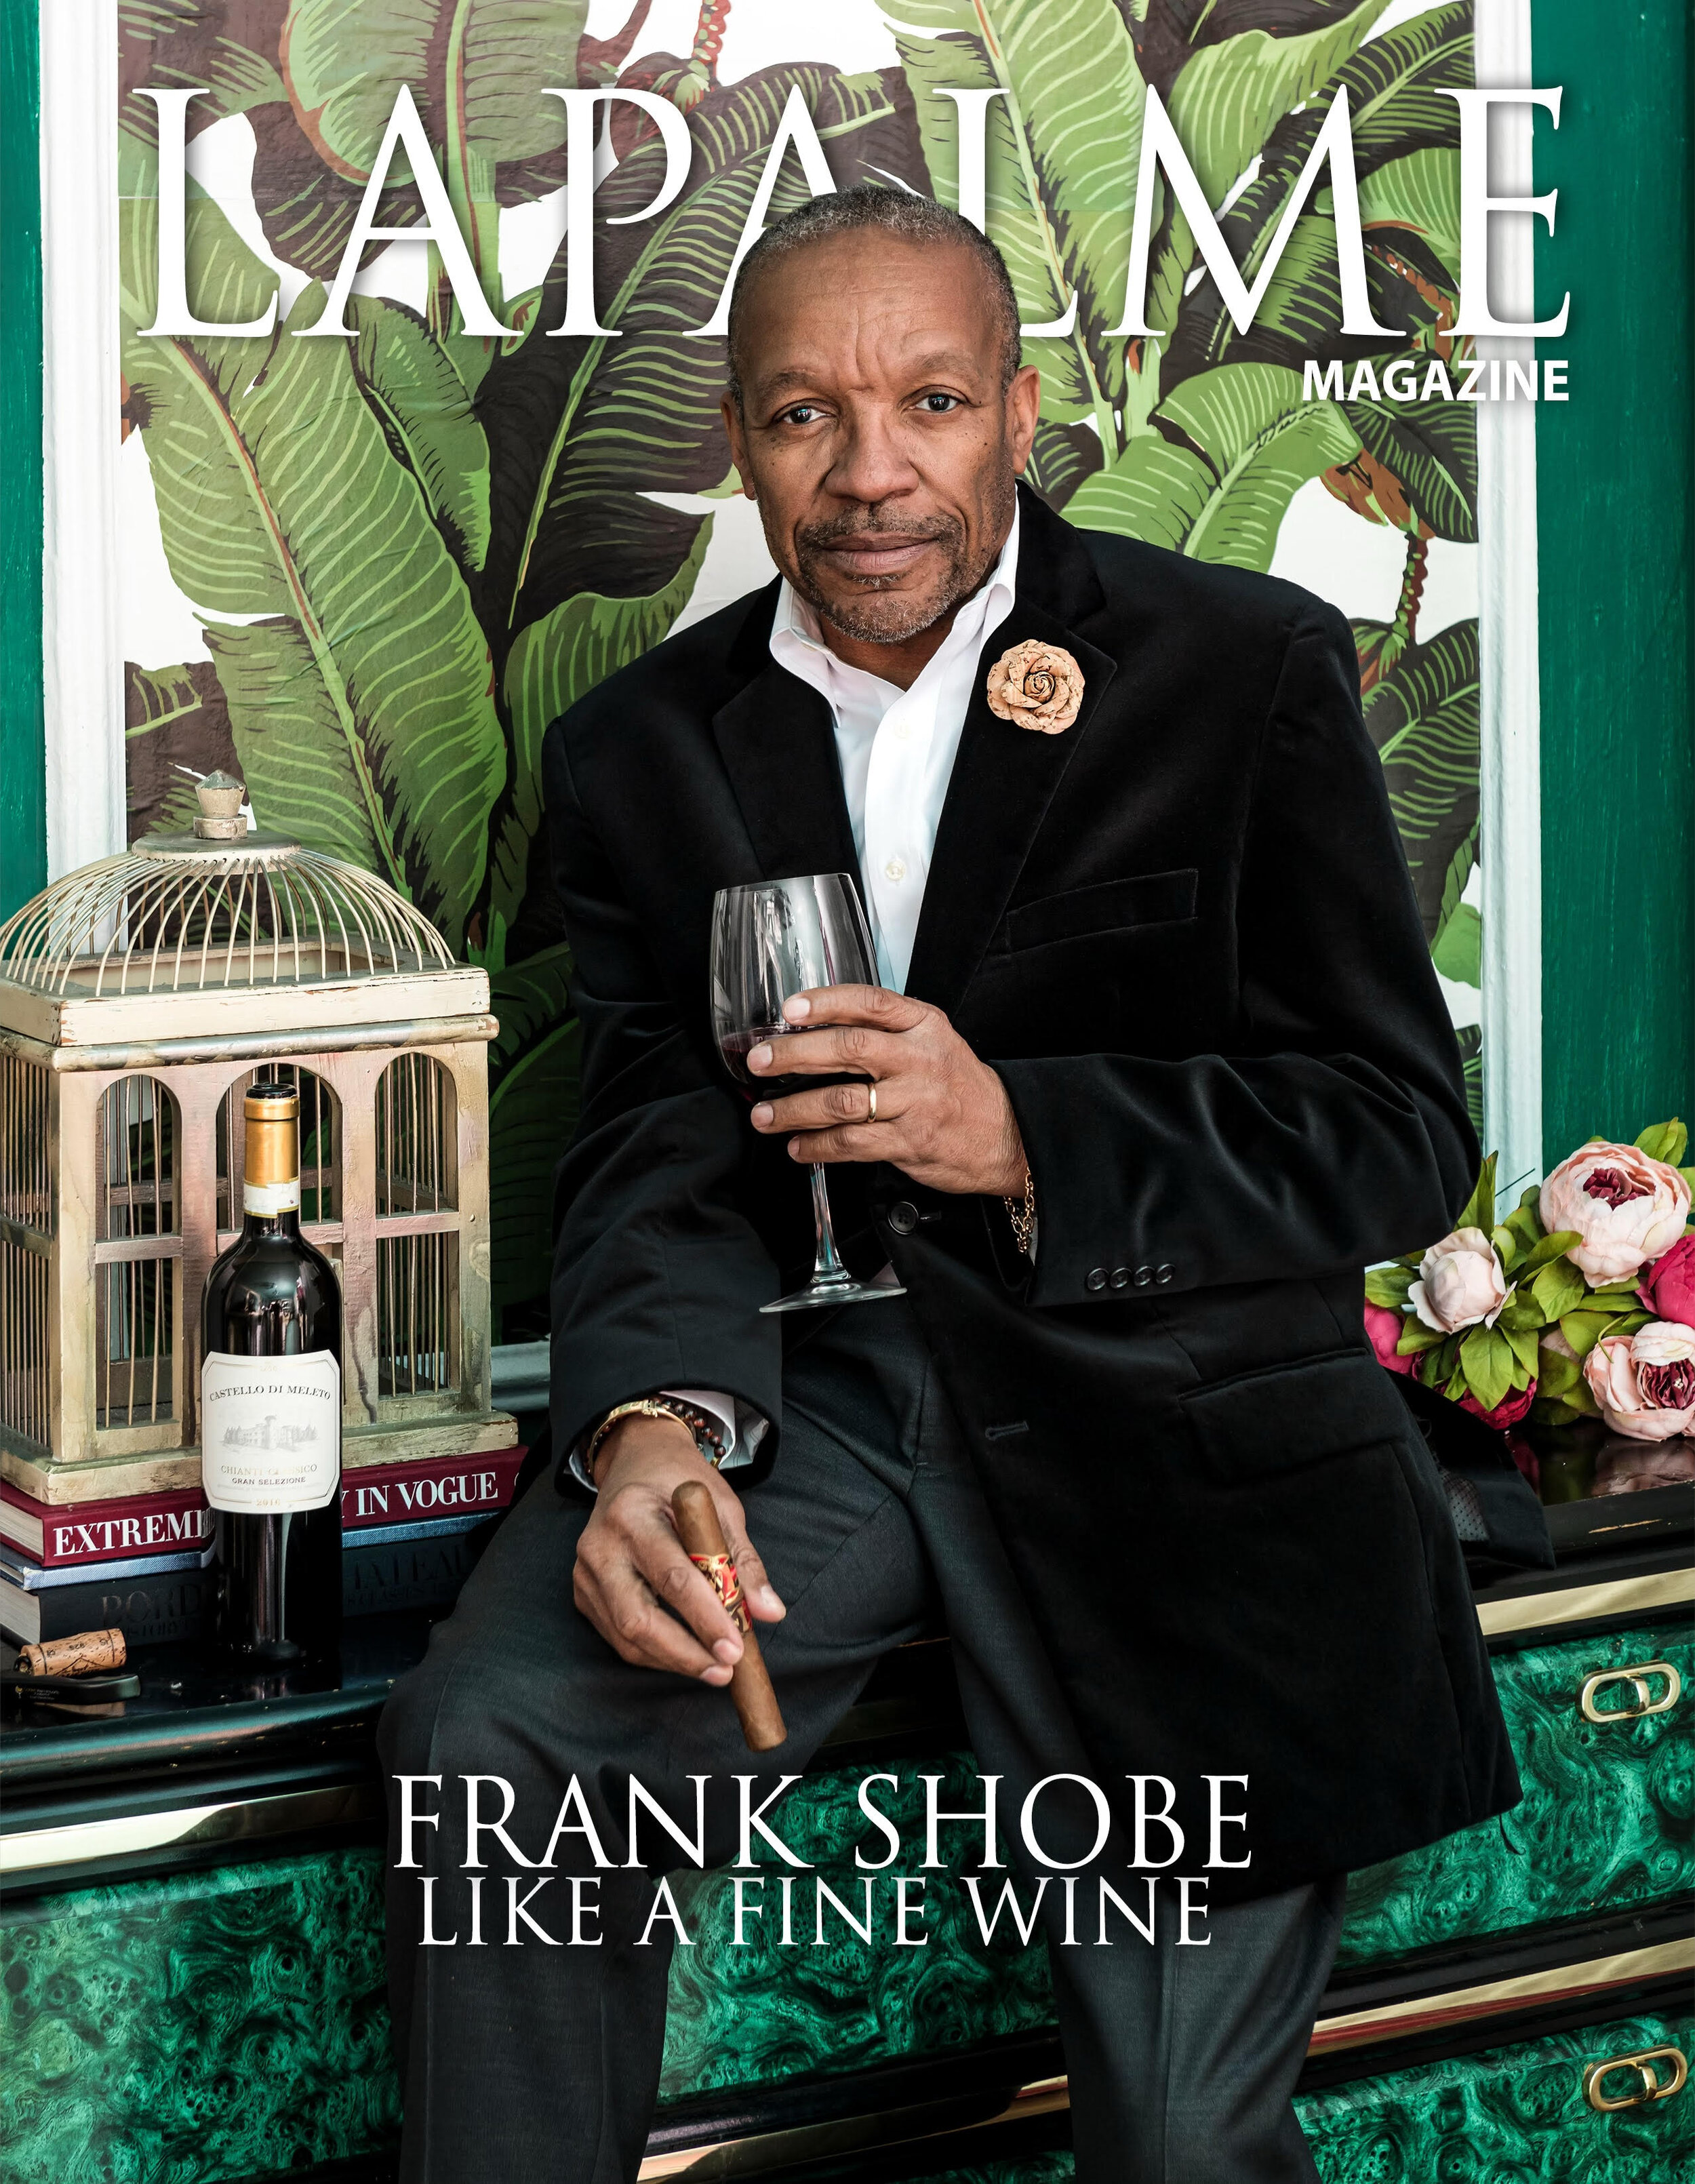 La Palme Magazine ft. Frank Shobe wearing Fleur'd Pins Cork&Gold Rose photographed by Andrew Werner, December 2020.jpg